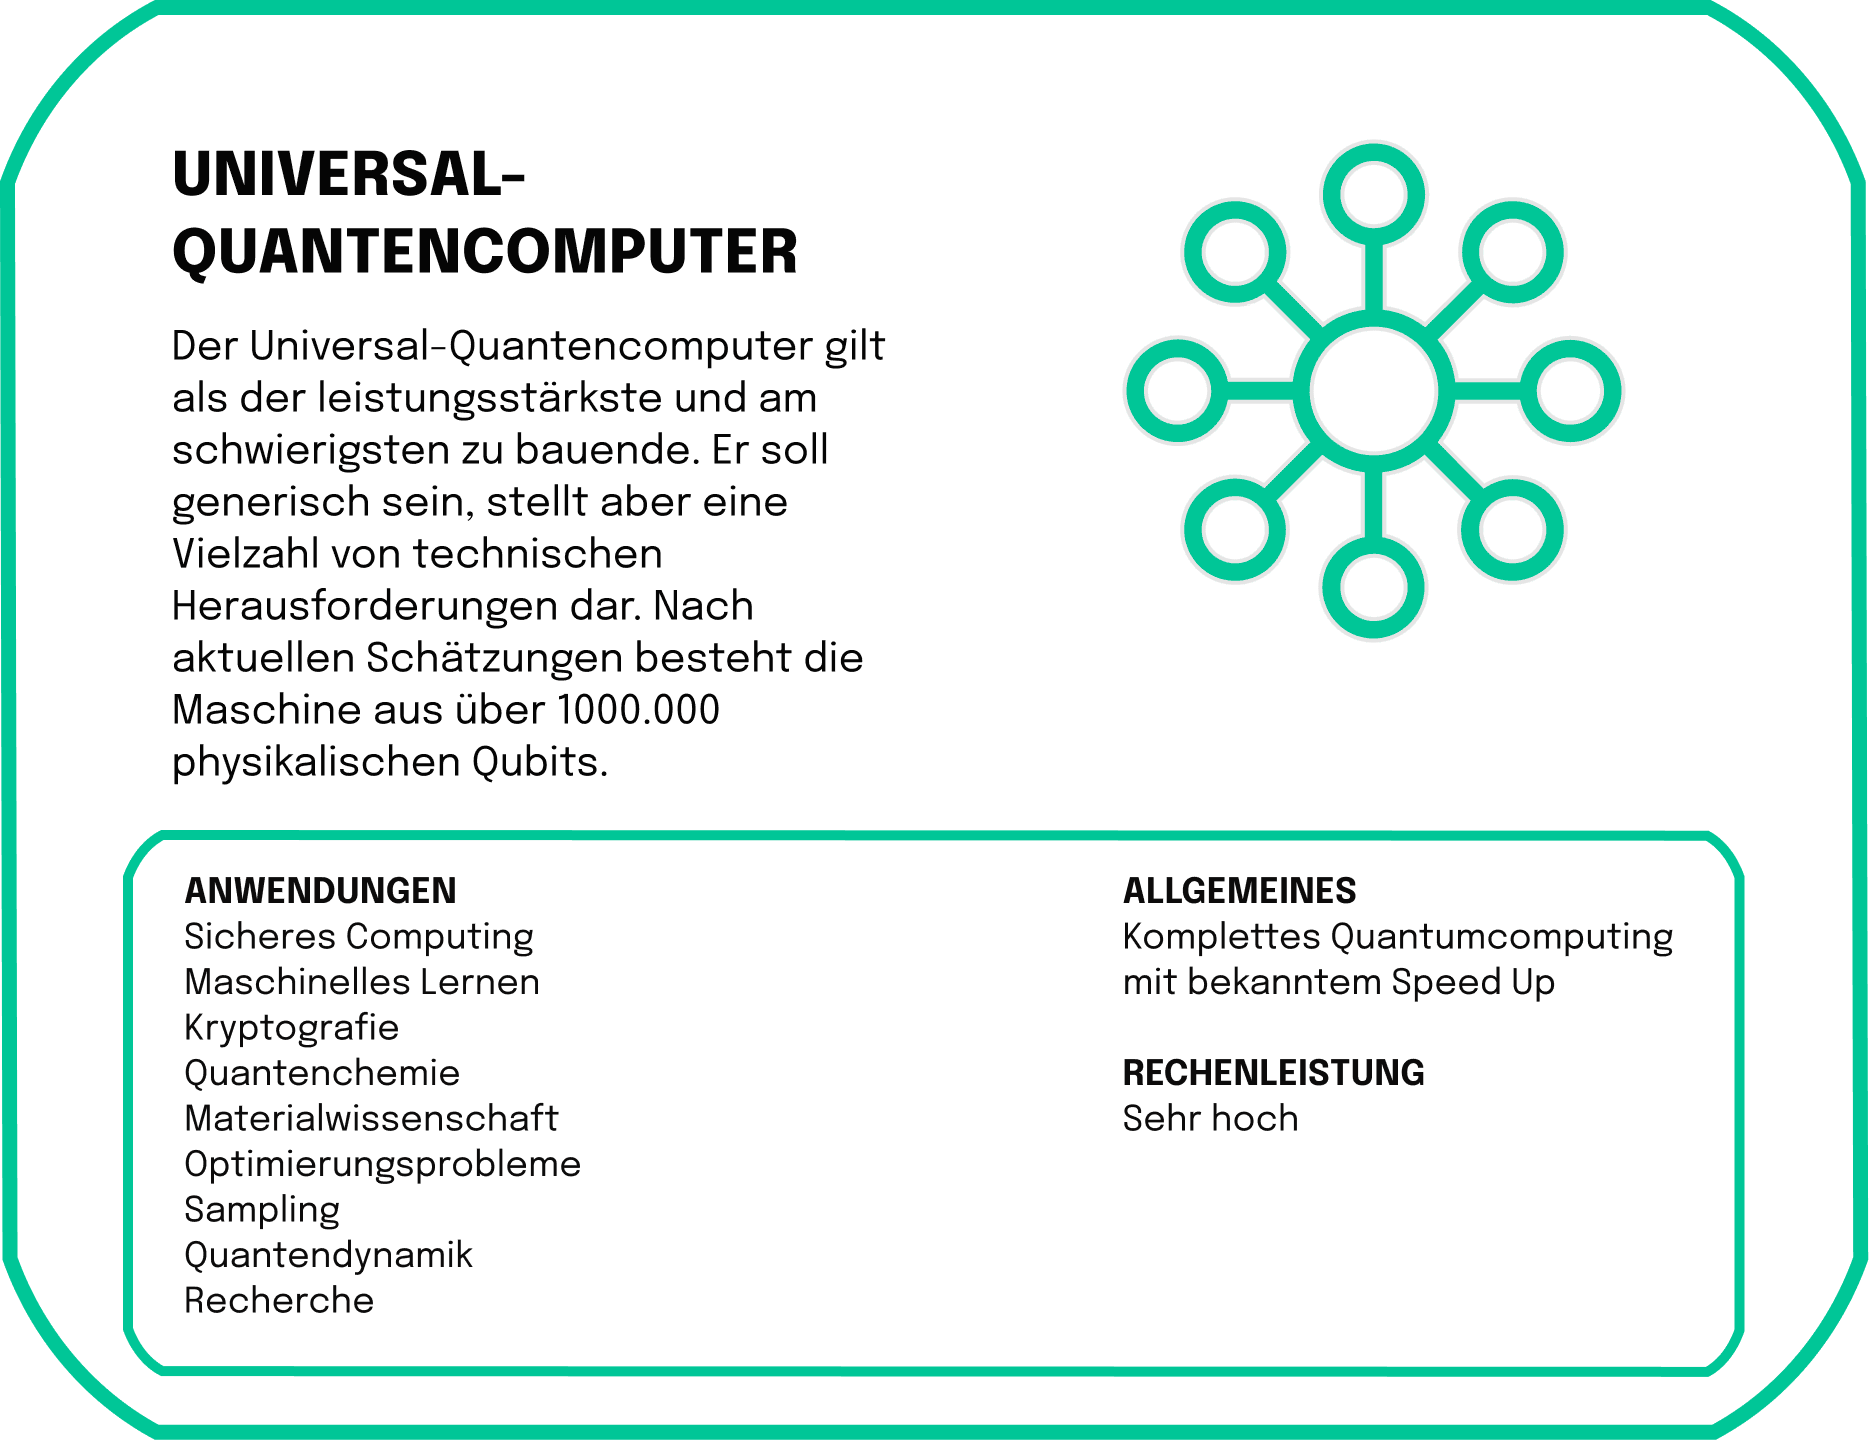 Der Universal-Quantencomputer gilt als der leistungsstärkste und am schwierigsten zu bauende. Er soll generisch sein, stellt aber eine Vielzahl von technischen Herausforderungen dar. Nach aktuellen Schätzungen besteht die Maschine aus über 1000.000 physikalischen Qubits.